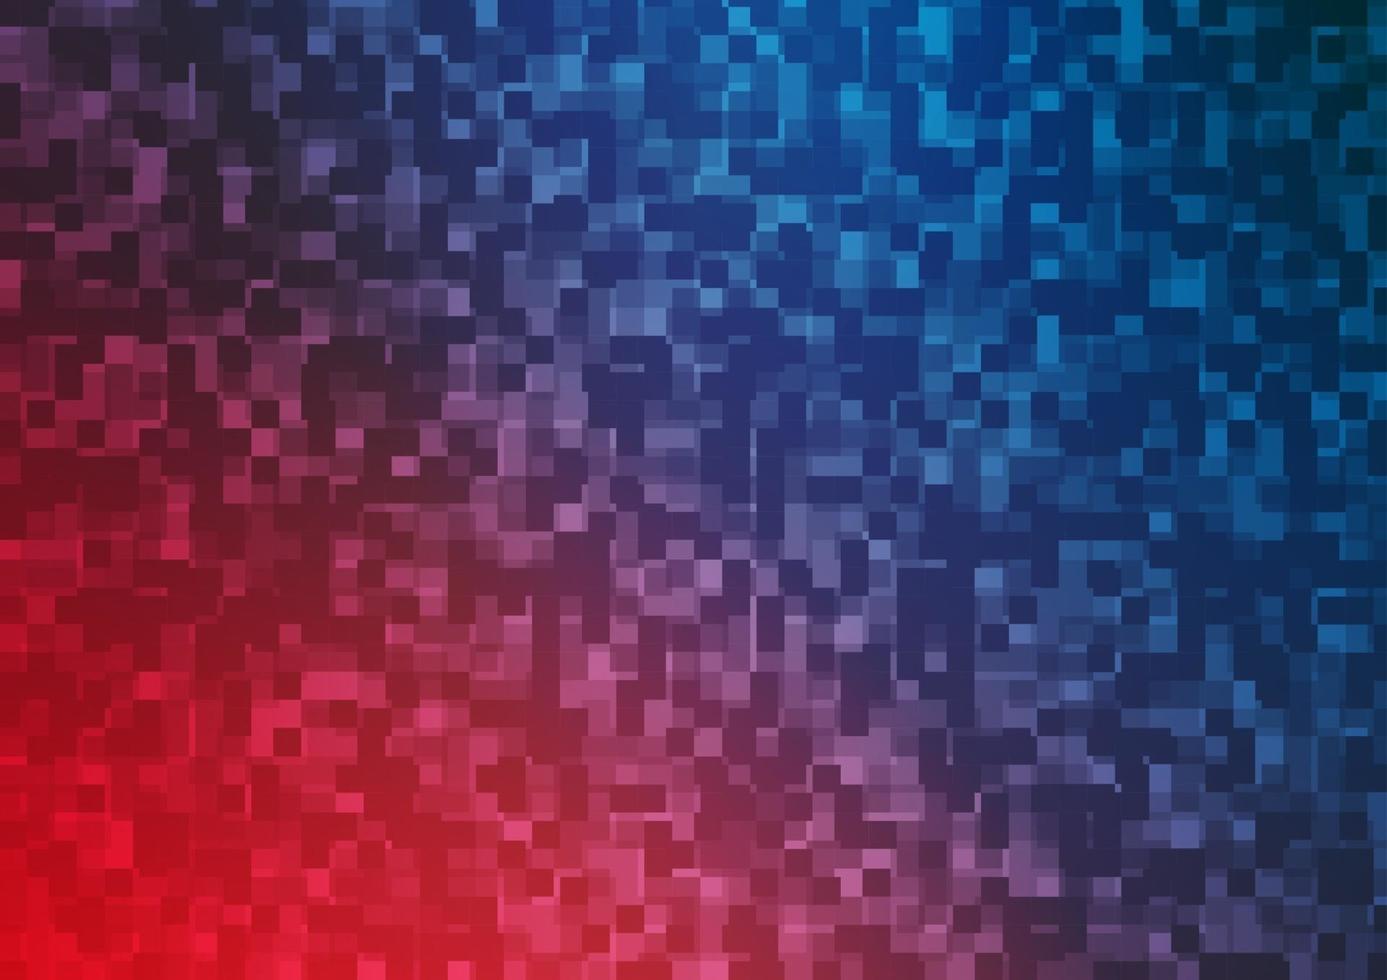 luz azul, modelo de vetor vermelho com cristais, retângulos.